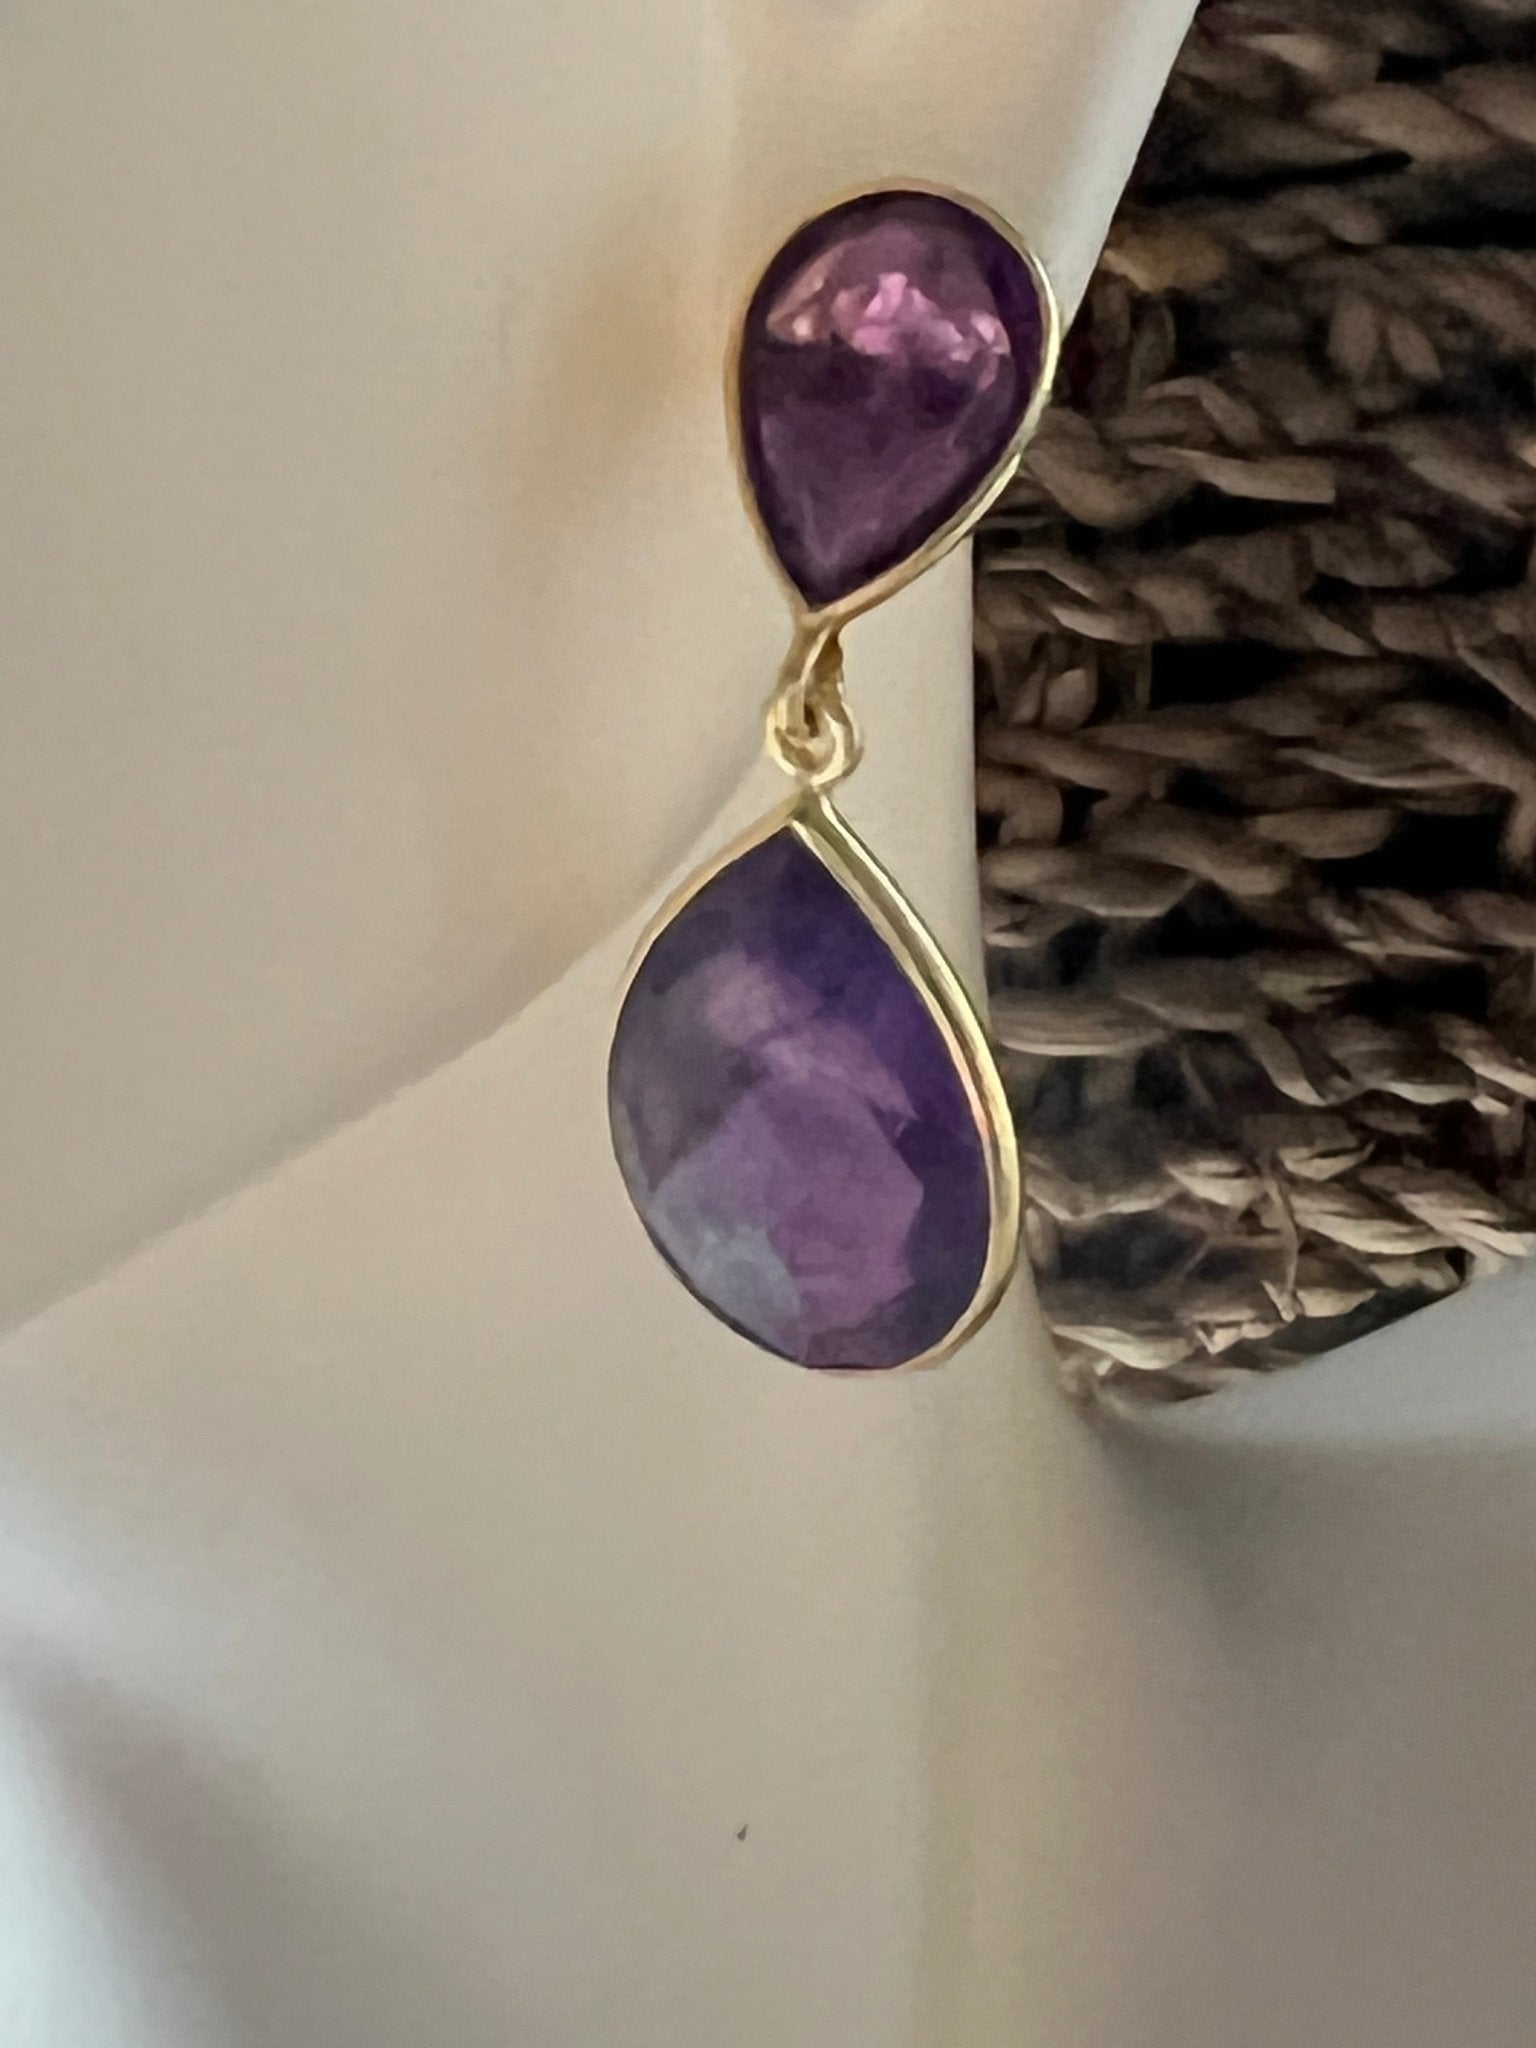 Amethyst drop statement earrings for a purple punch - Sundara Joon